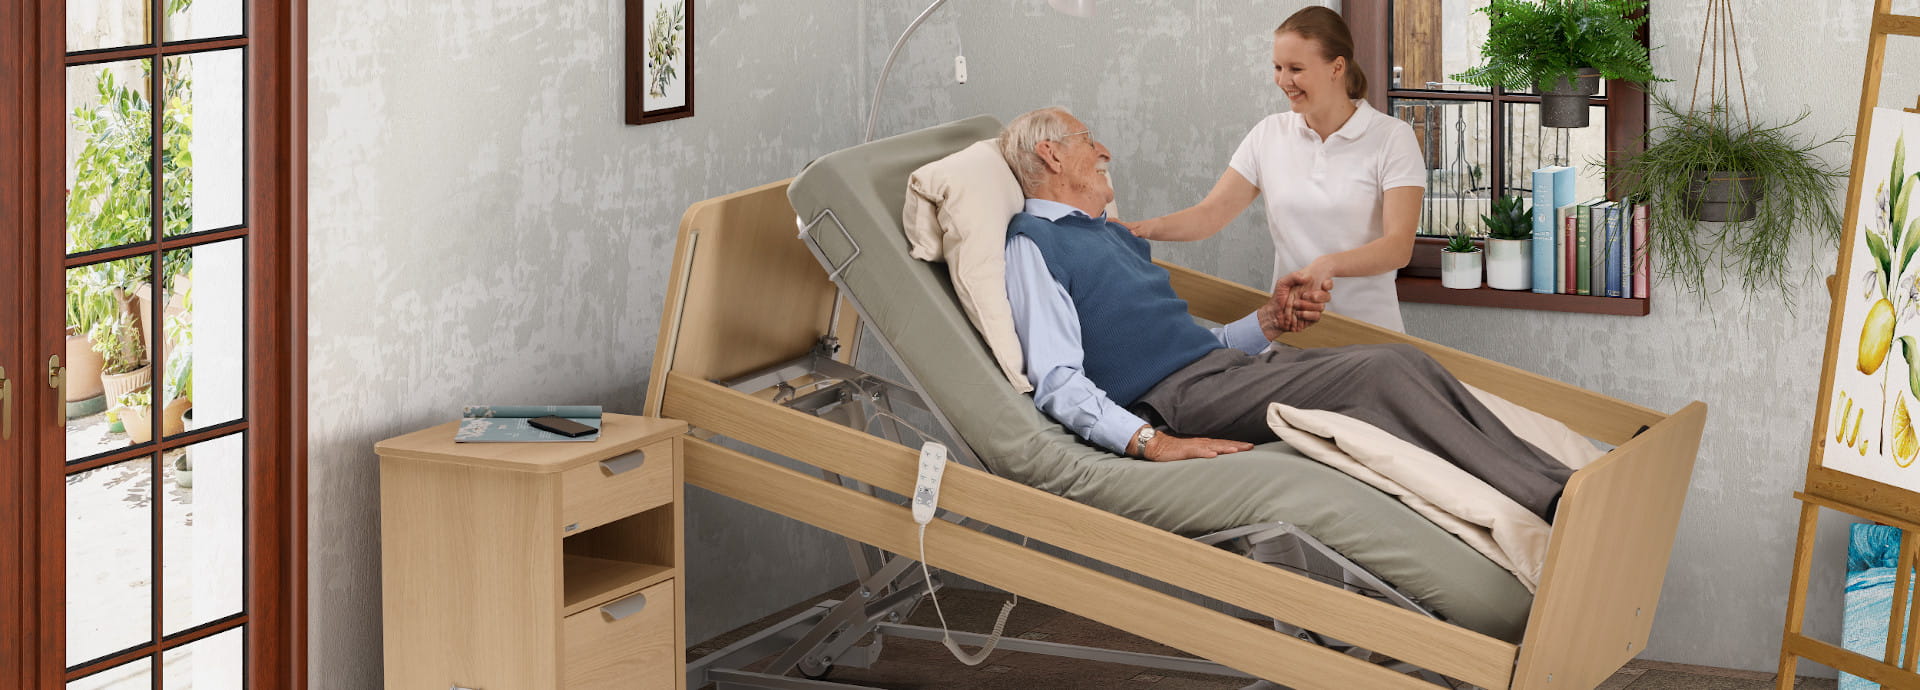 Mit innovativen Funktionen ermöglicht das Pflegebett movita sc komfortable Pflege und gewährleistet gleichzeitig höchste Produktsicherheit.  